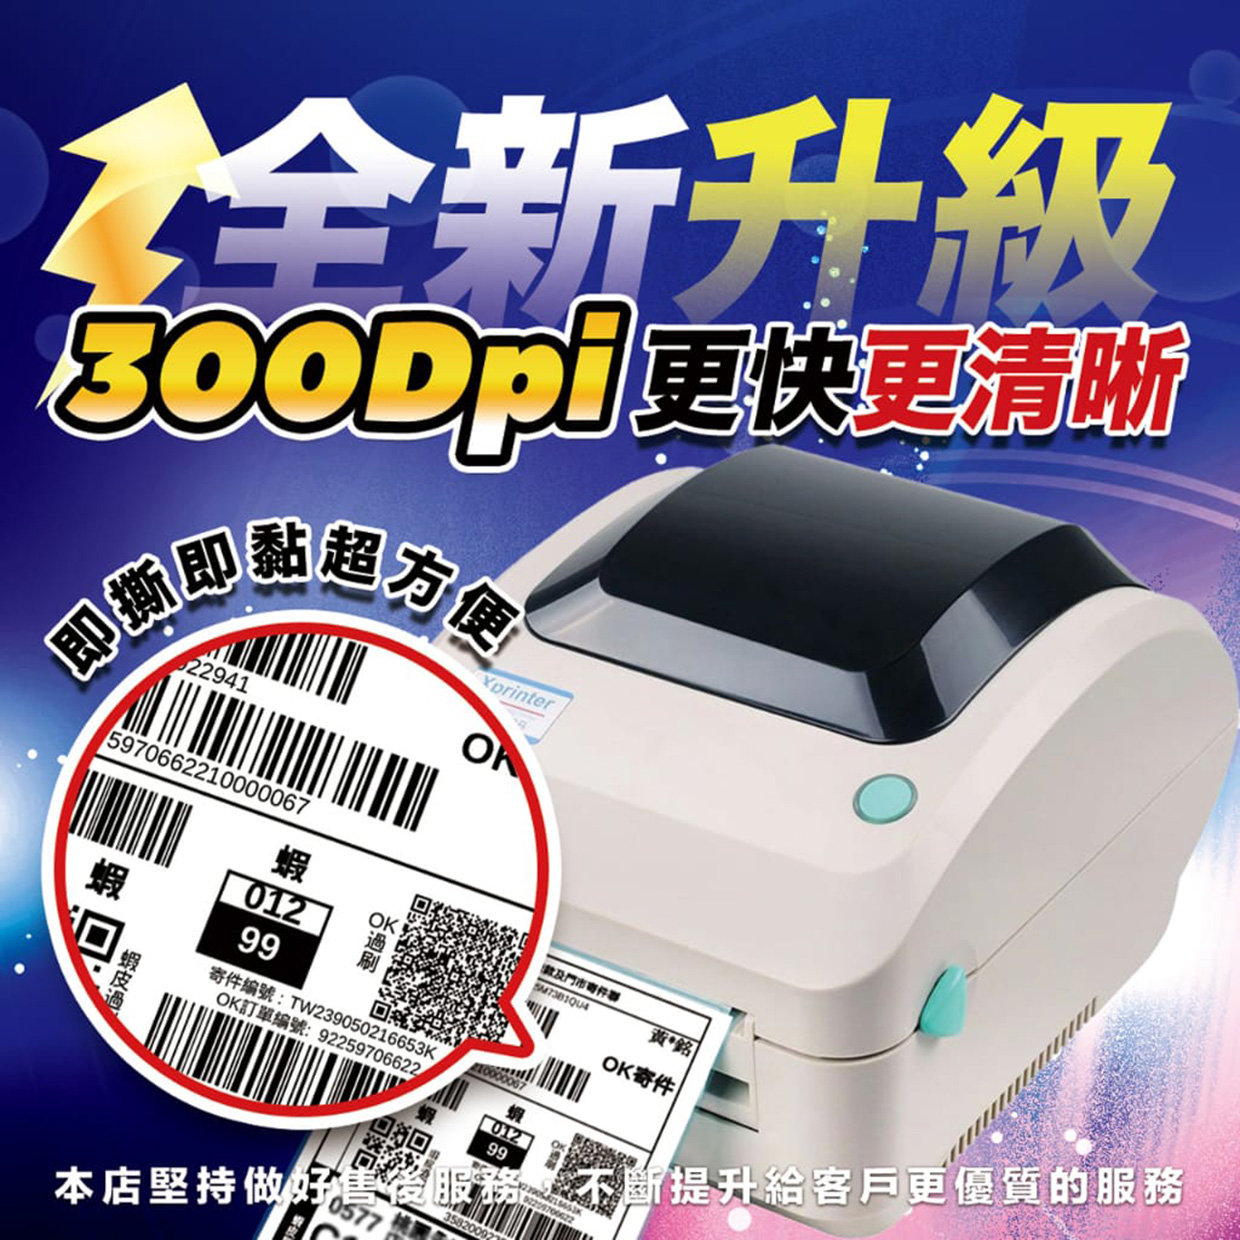 [芯燁台灣總代理]標籤機 打印機 300dpi高解析 Xp470e 標籤貼紙機 印表機 出貨神器 出貨單 熱感應 條碼機 2